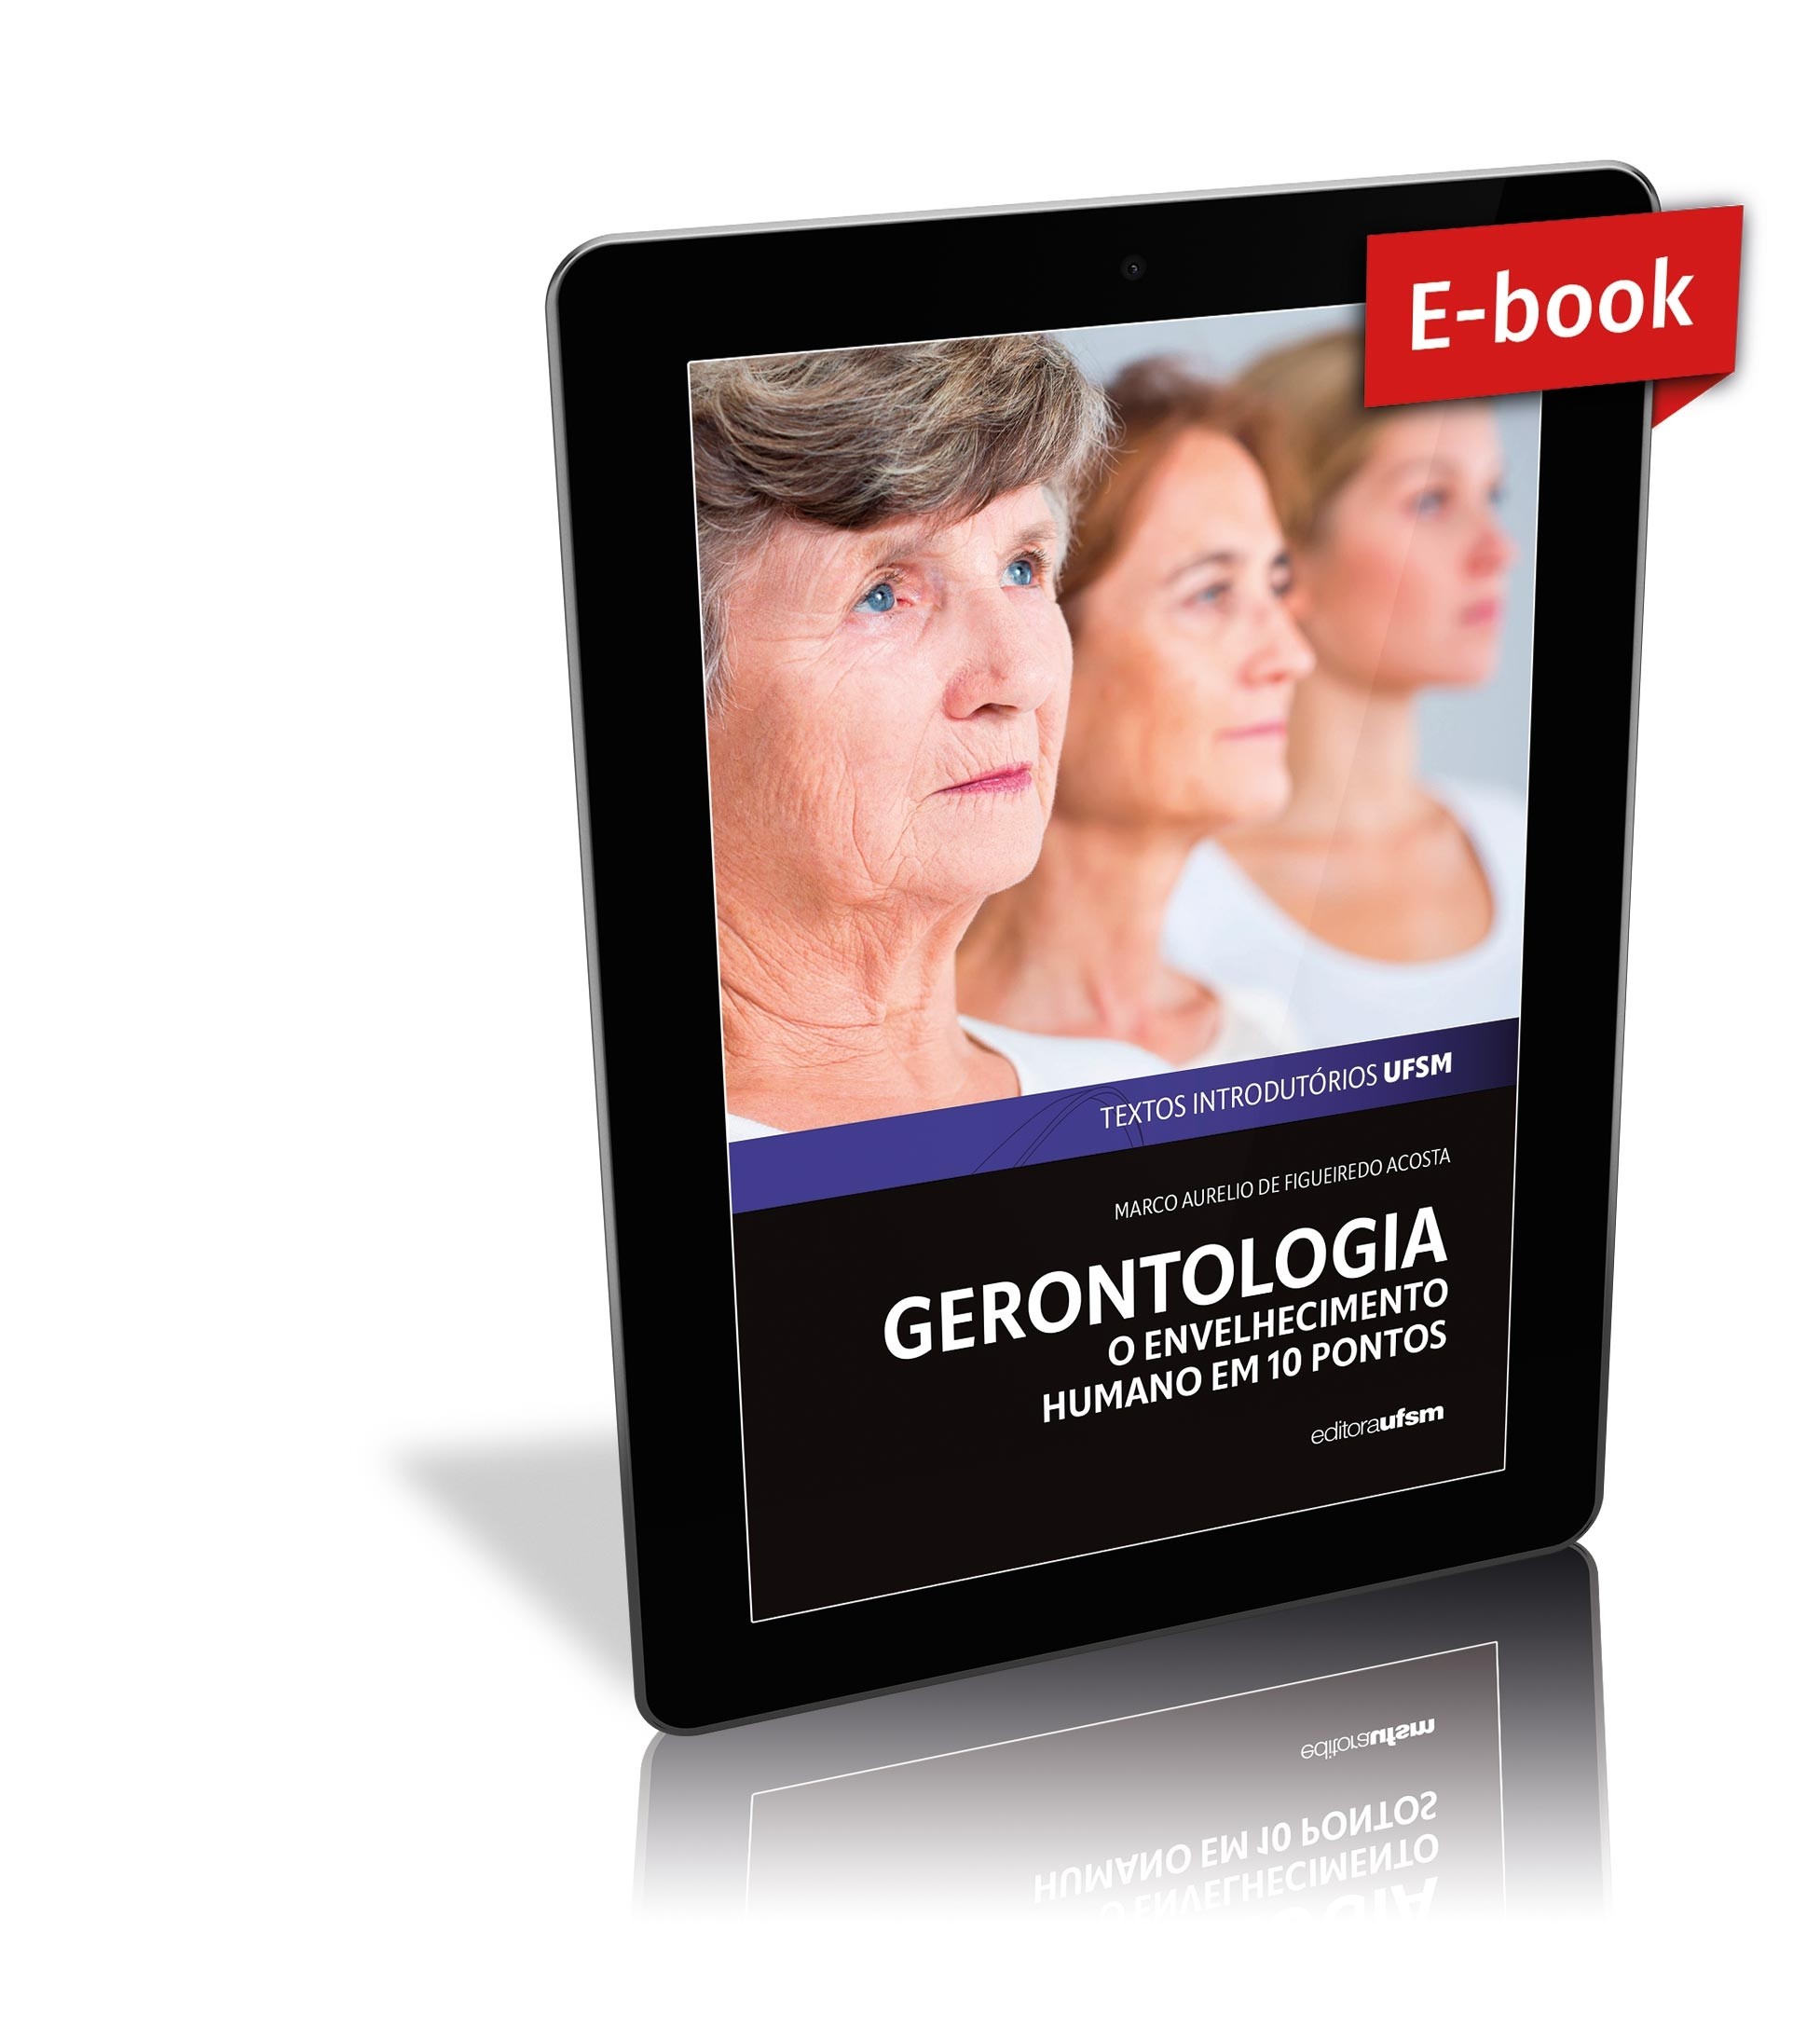 Capa do ebook Gerontologia: o envelhecimento humano em 10 pontos